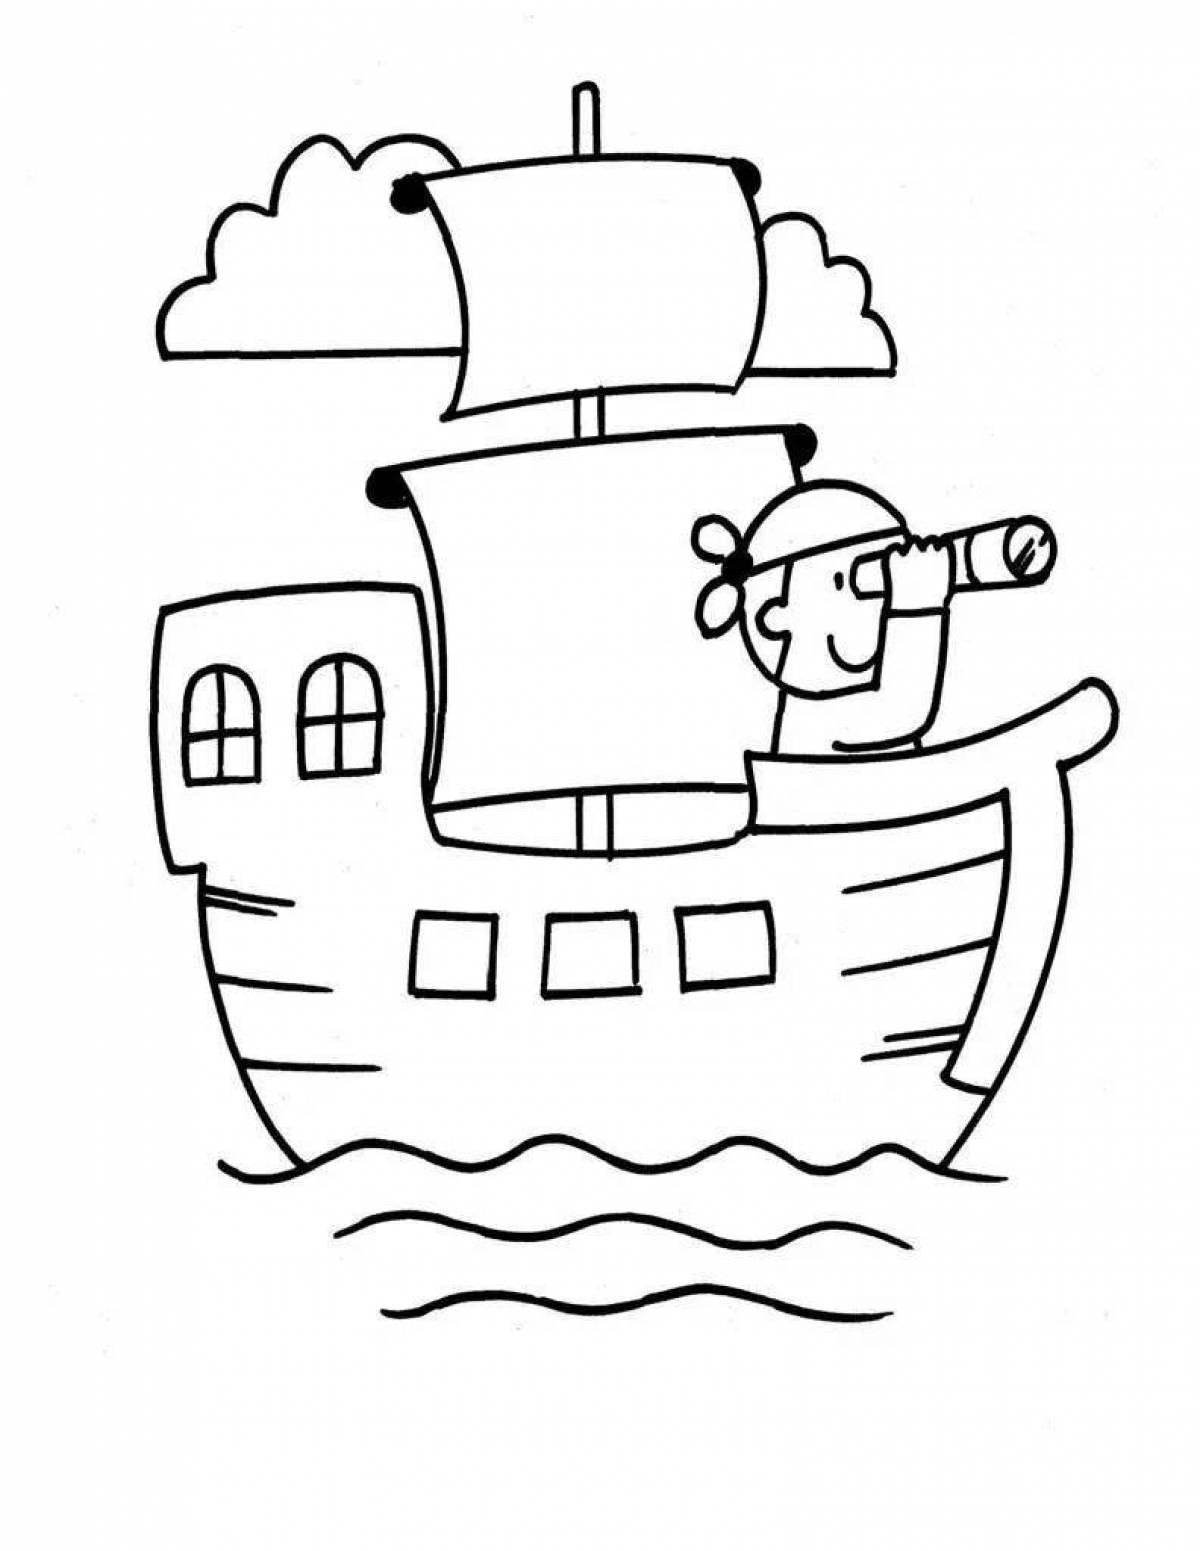 Яркая раскраска корабля для детей 5-6 лет